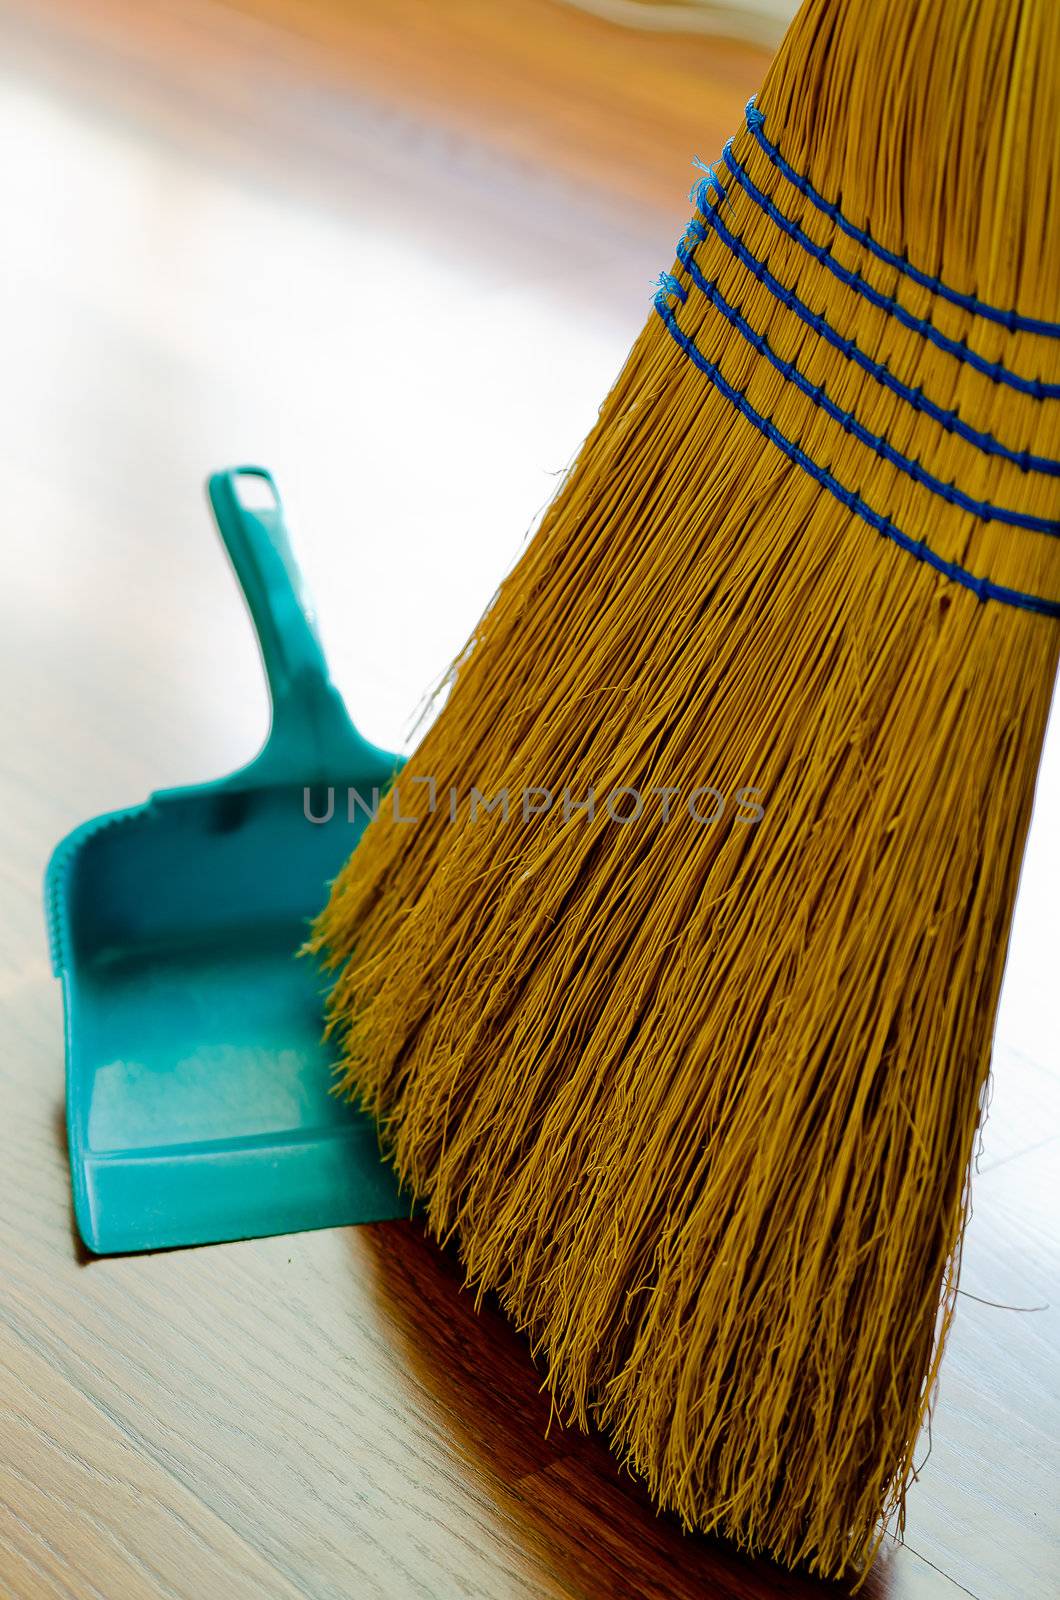 Broom and dust pan on hardwood floor.